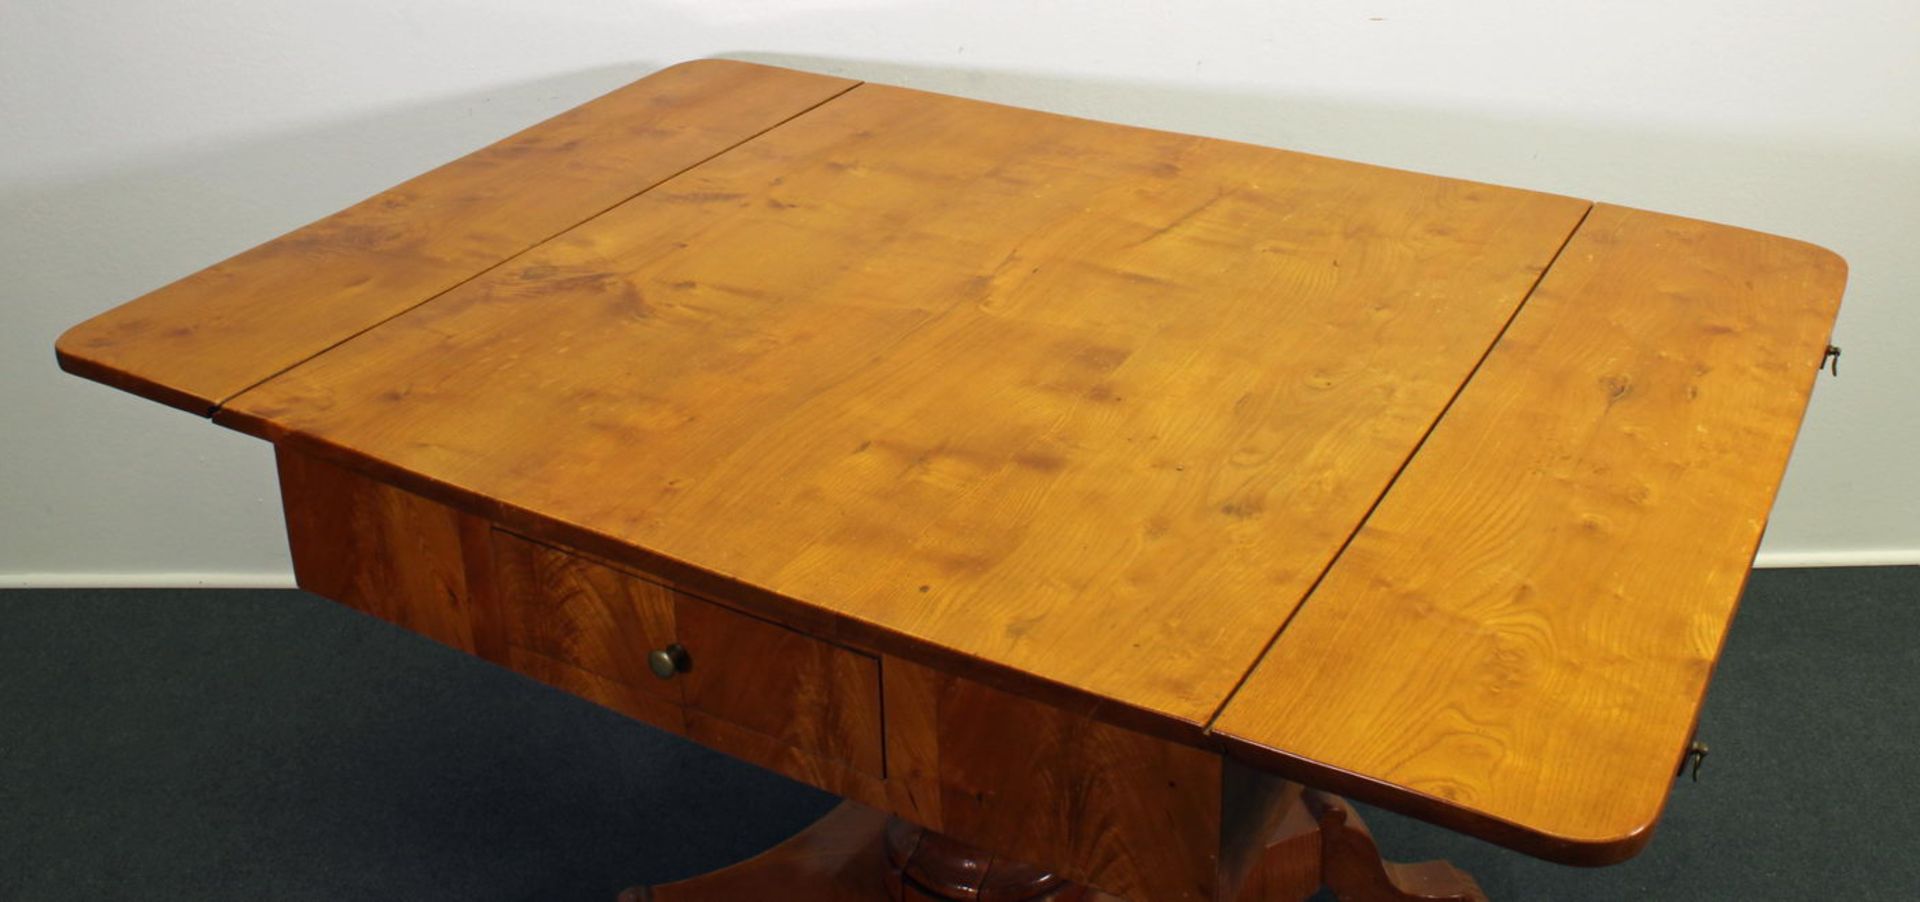 Tisch, Biedermeier, Esche, norddeutsch, Seiten klappbar, ein Schubfach, Balusterschaft auf verpassi - Image 2 of 2